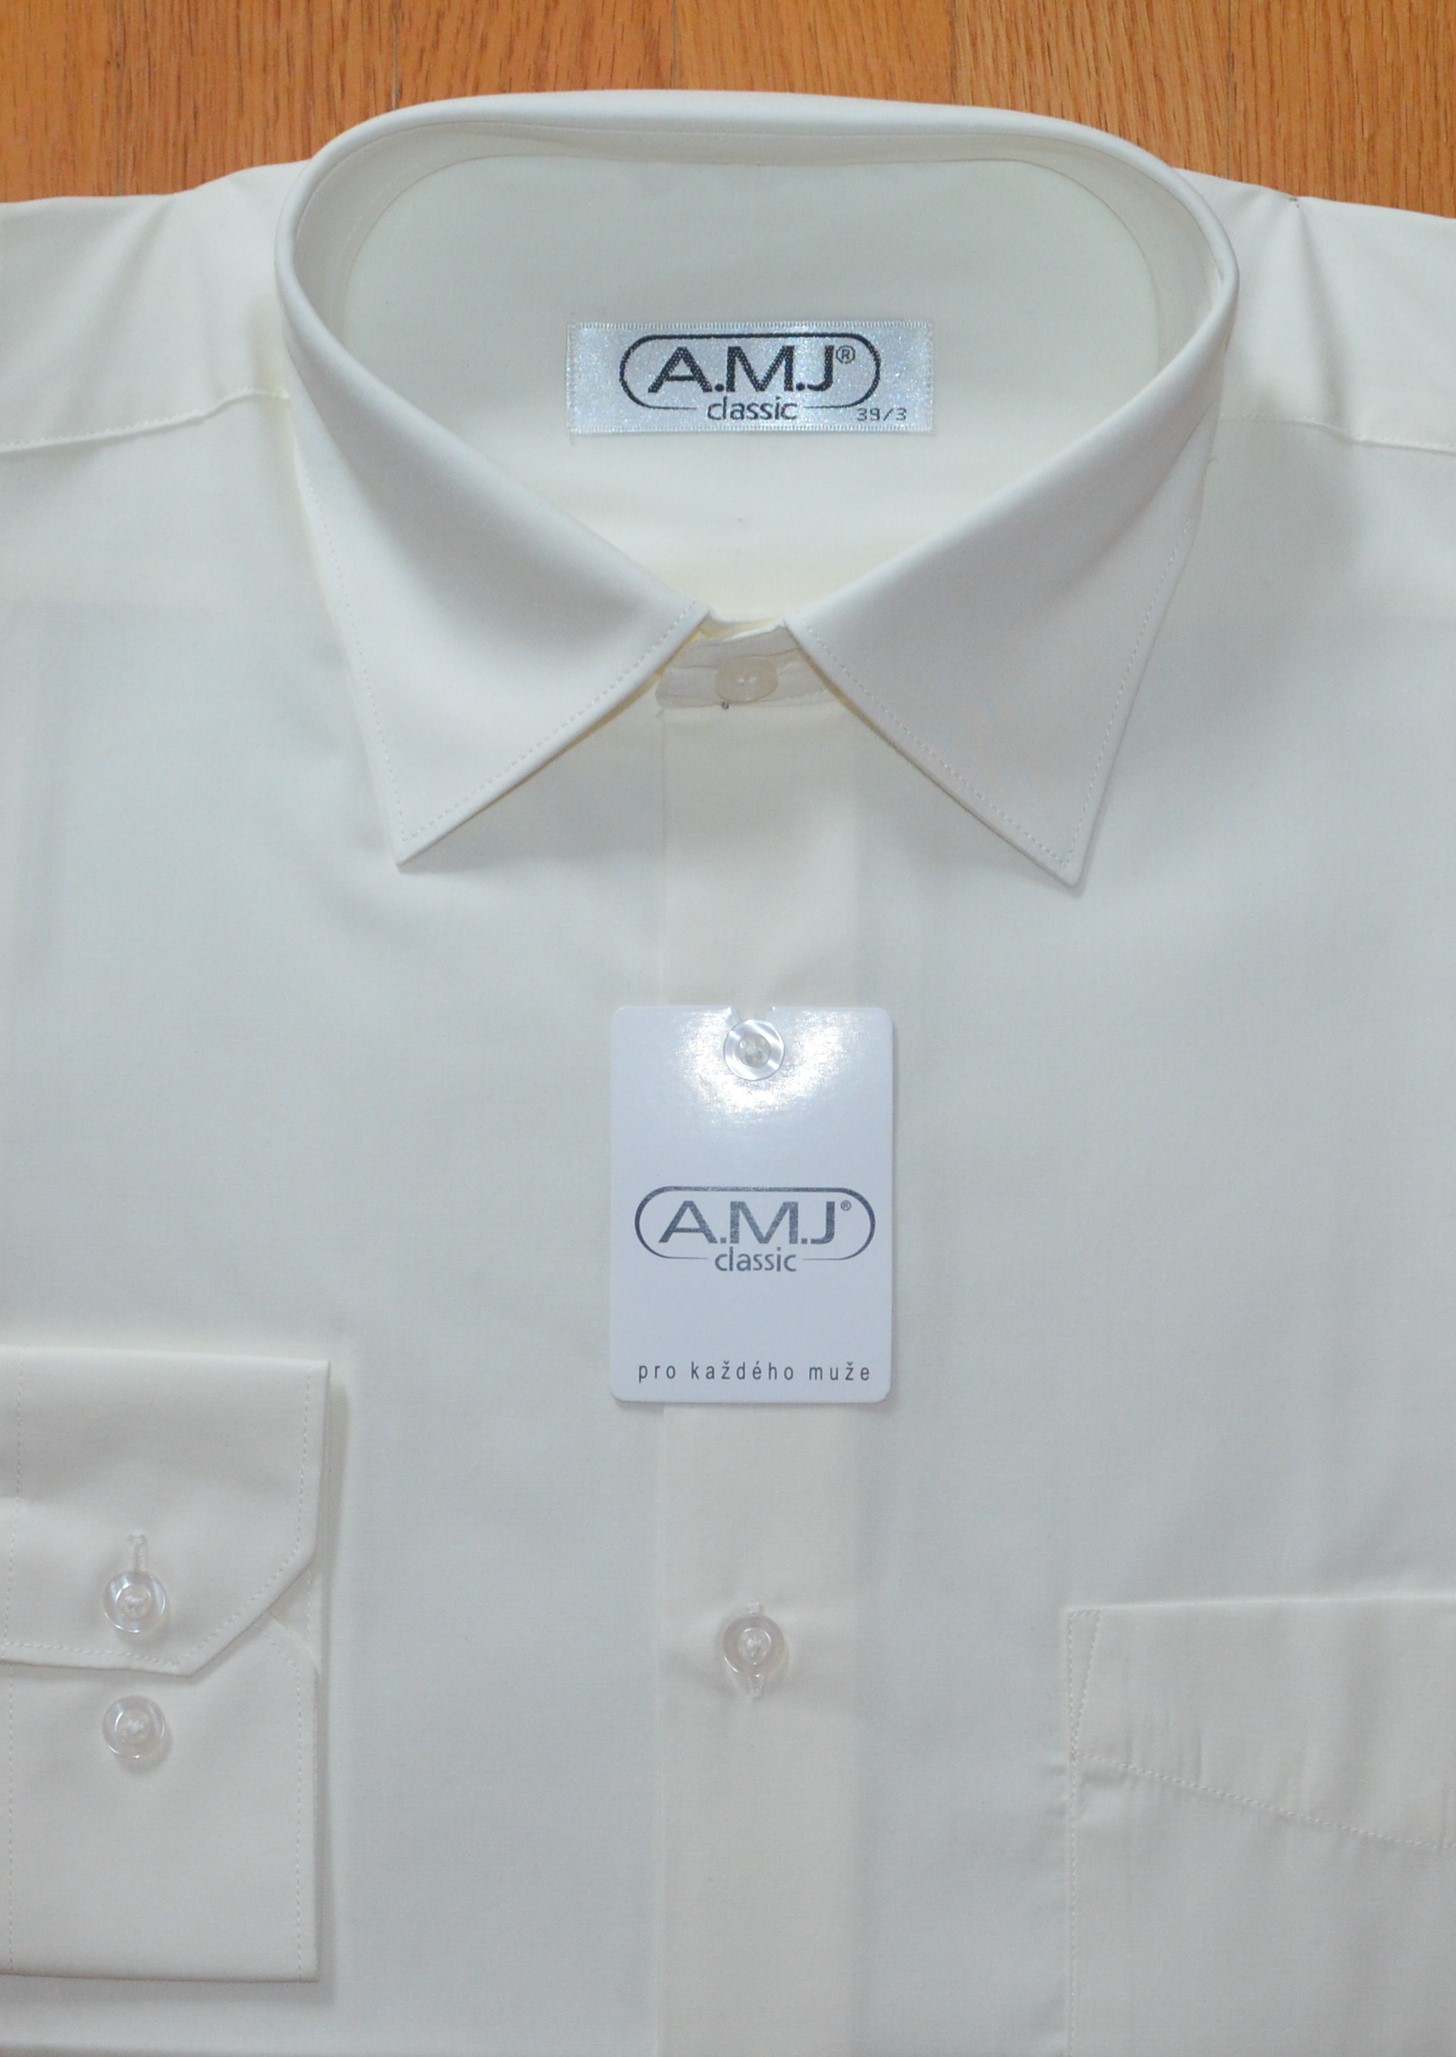 Pánská košile dlouhý rukáv AMJ JDP 016 Classic Prodloužená Velikost: 39/3